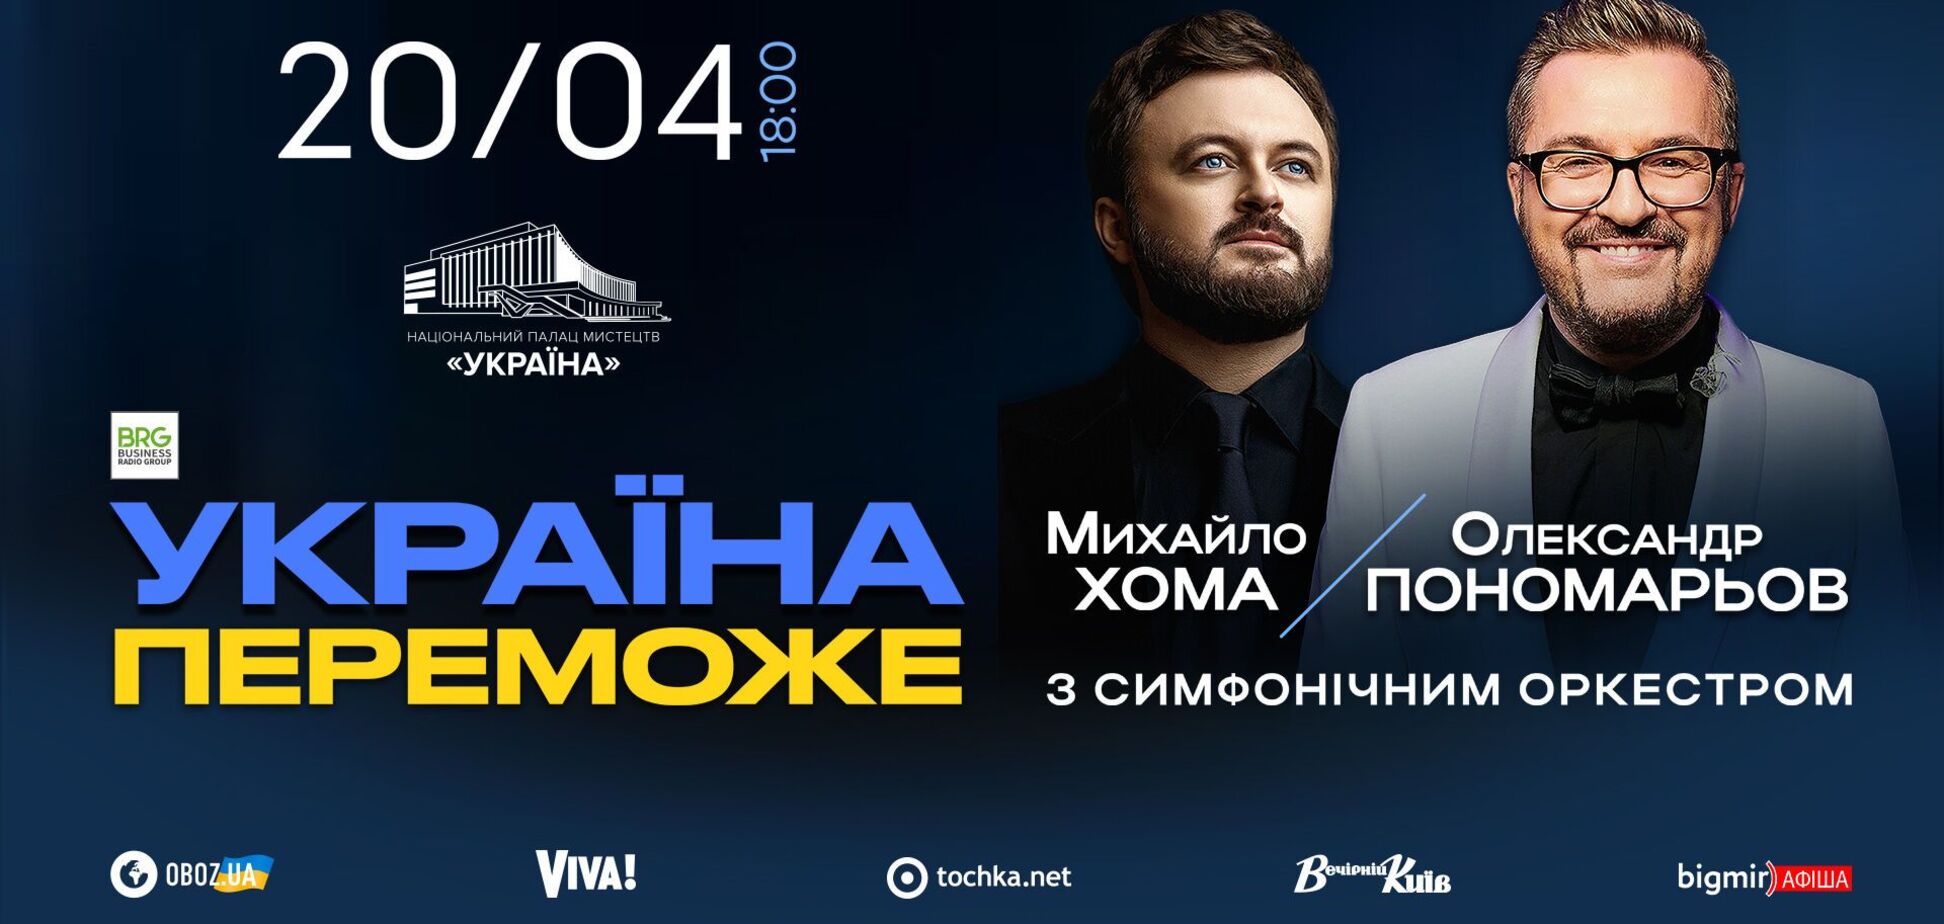 'Украина победит': Александр Пономарев и Михаил Хома представят в Киеве новую патриотическую программу